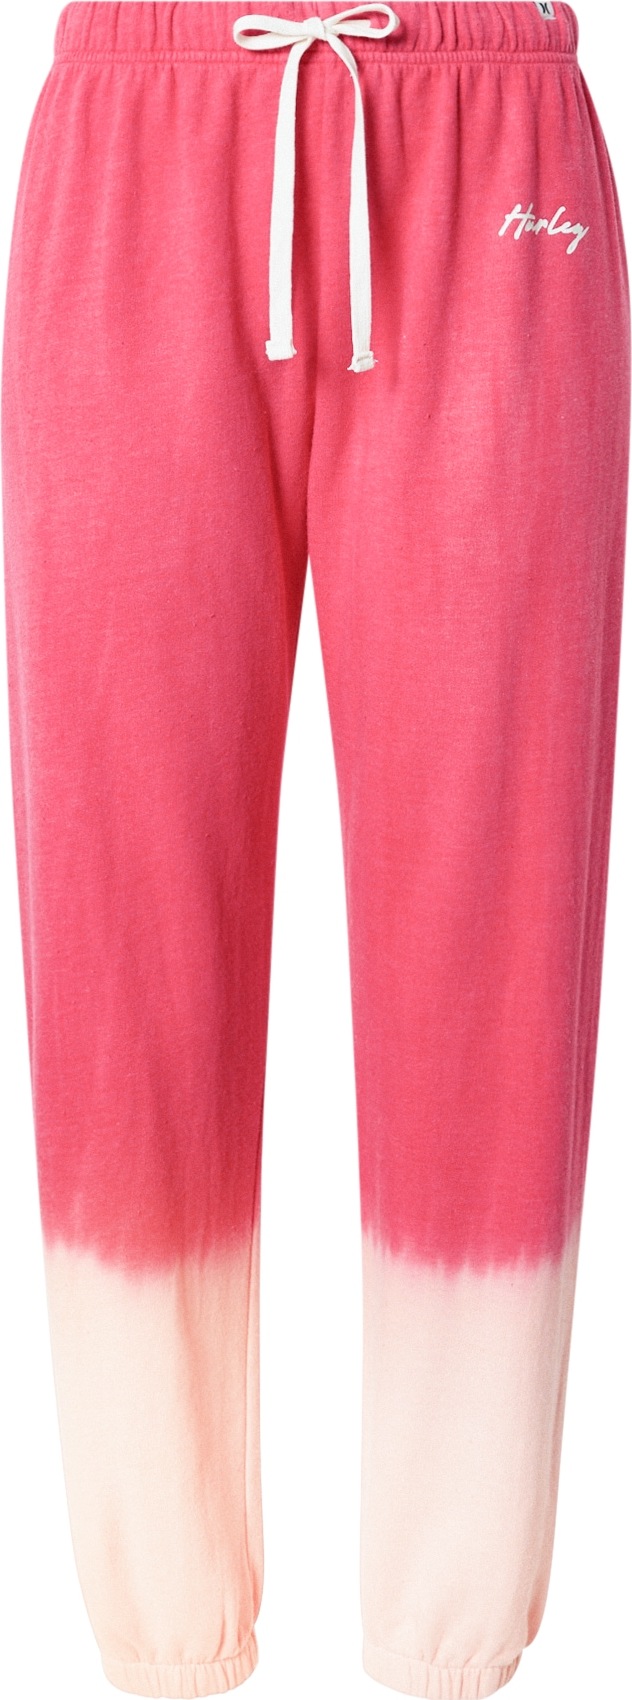 Hurley Sportovní kalhoty meruňková / pink